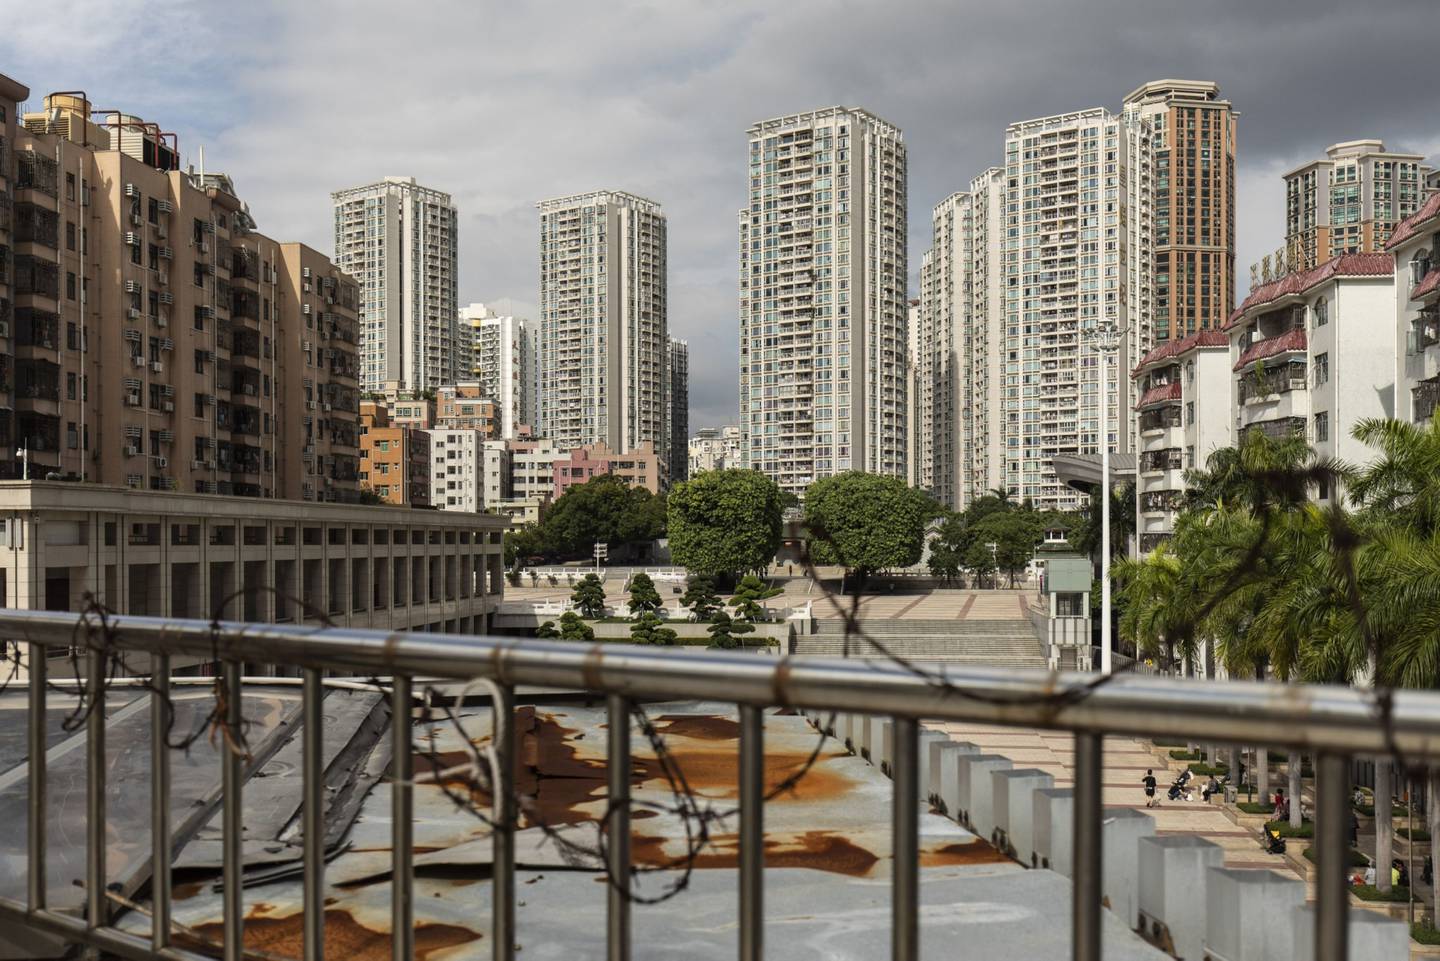 El pueblo de Huanggang y los edificios residenciales circundantes en Shenzhen, China, el martes 12 de octubre de 2021.